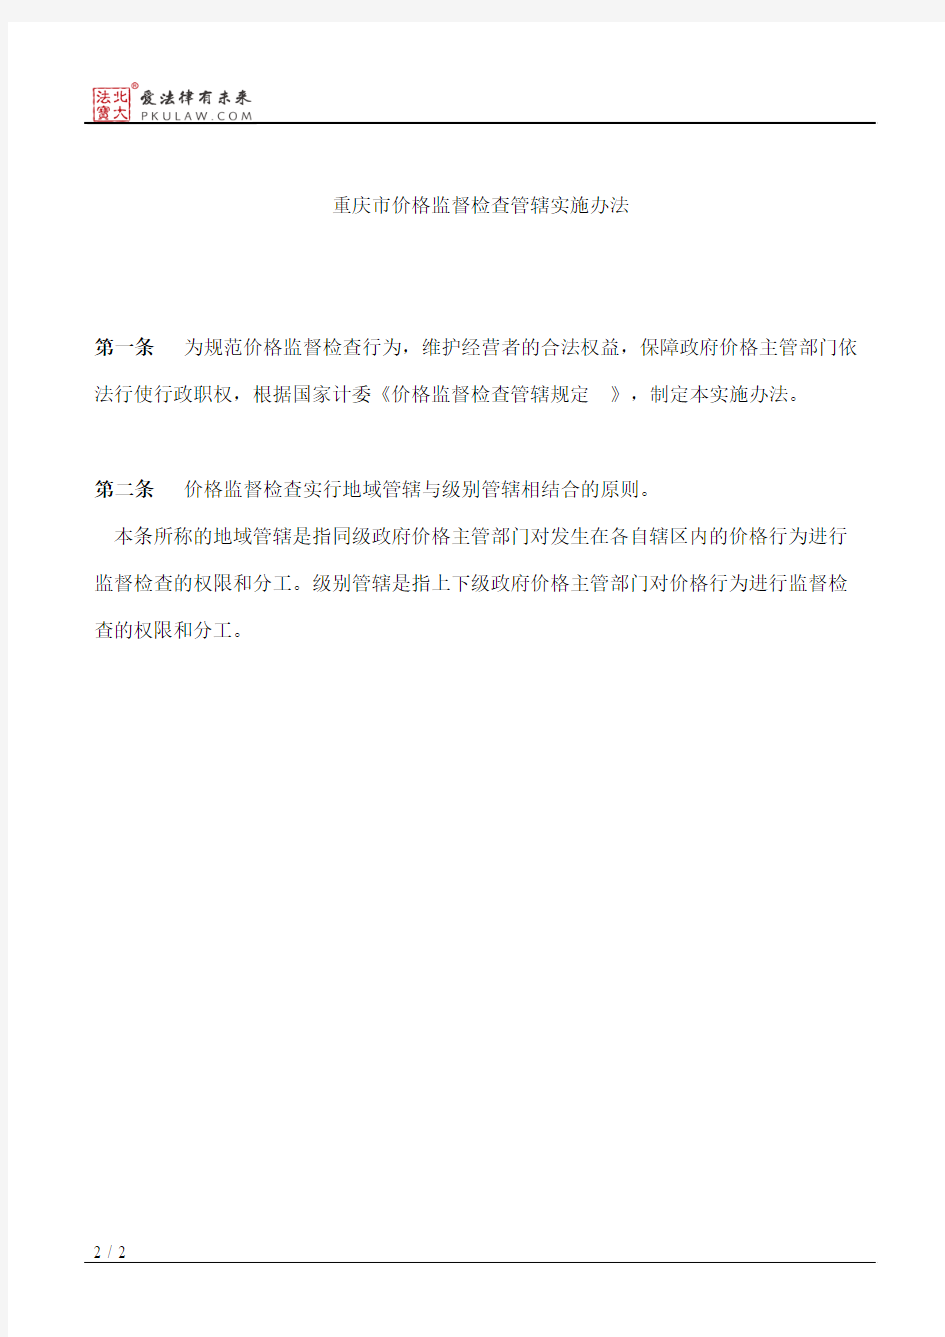 重庆市物价局关于印发《重庆市价格监督检查管辖实施办法》的通知